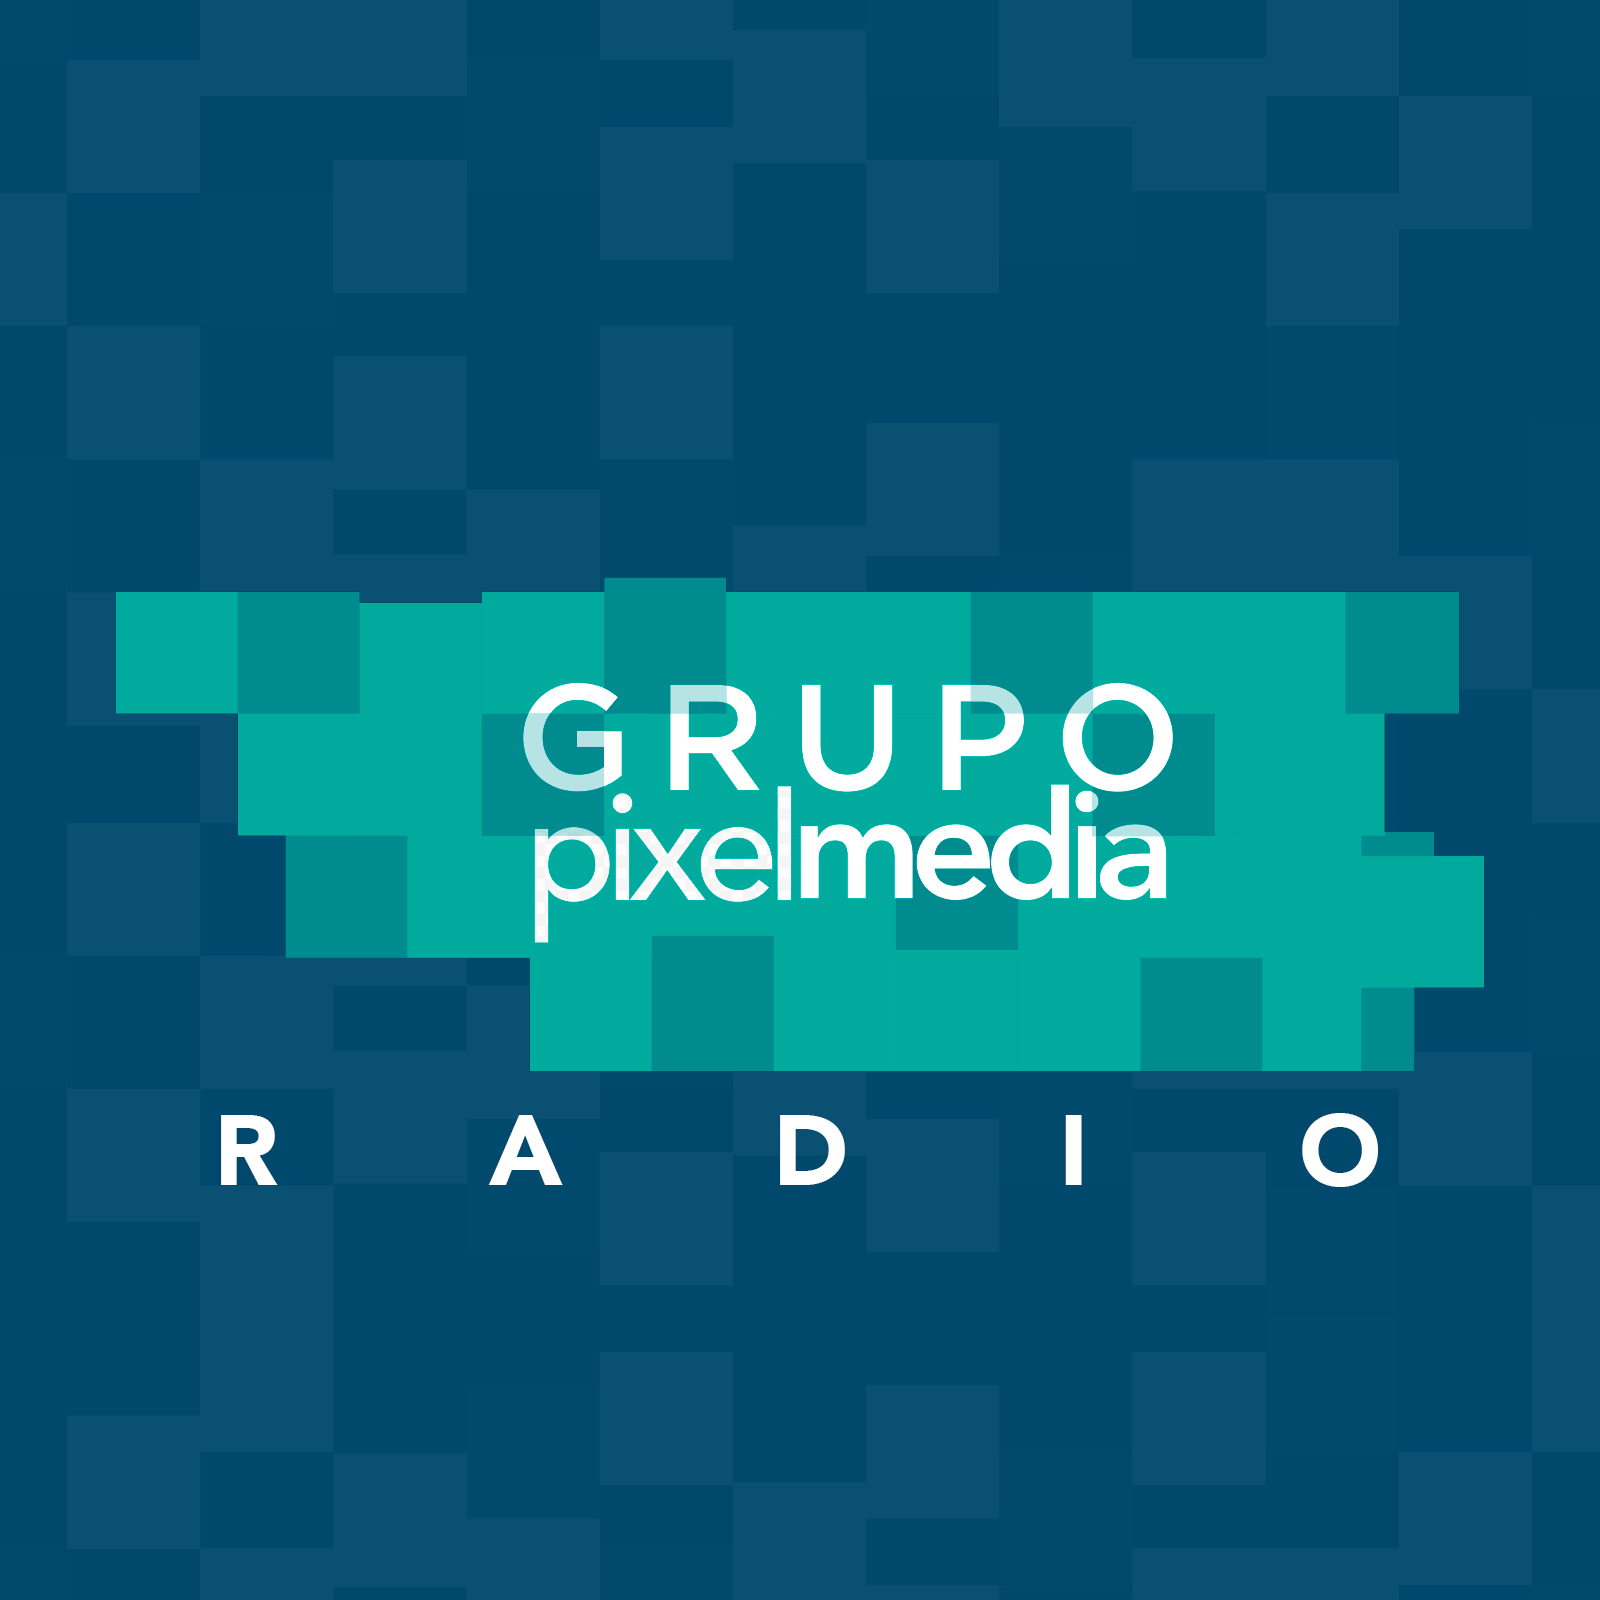 Radio pixelMedia